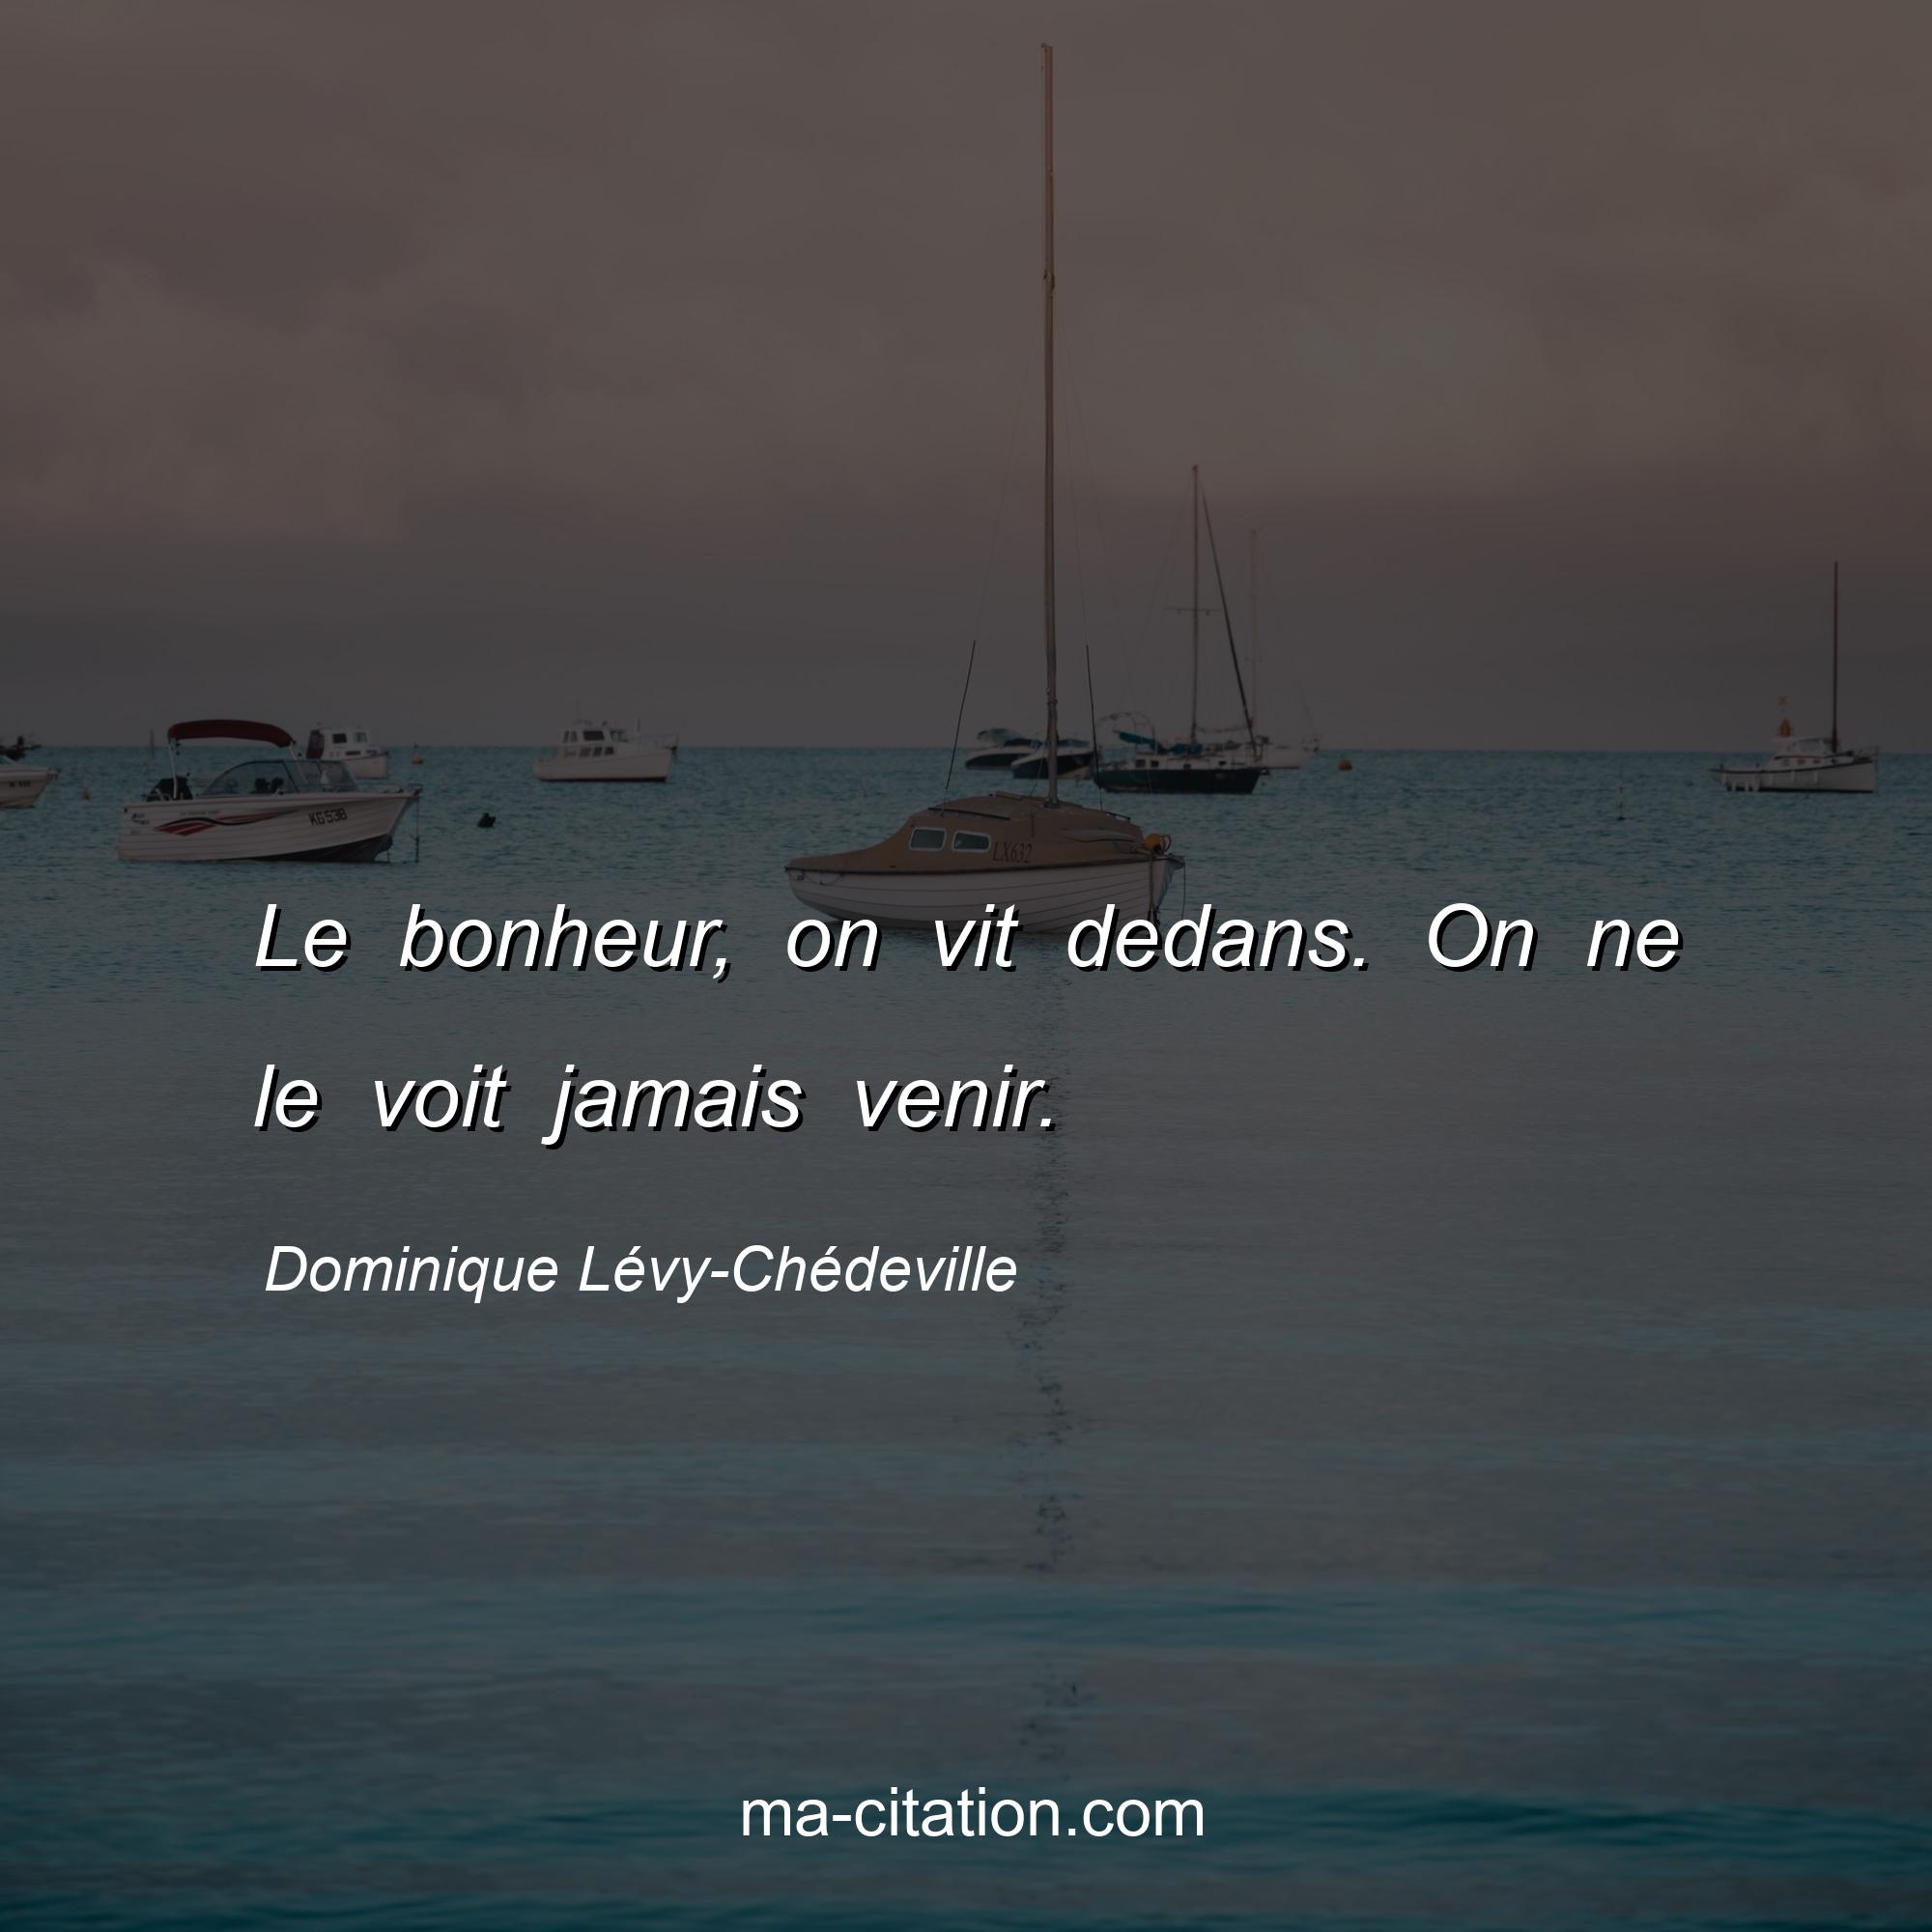 Dominique Lévy-Chédeville : Le bonheur, on vit dedans. On ne le voit jamais venir.